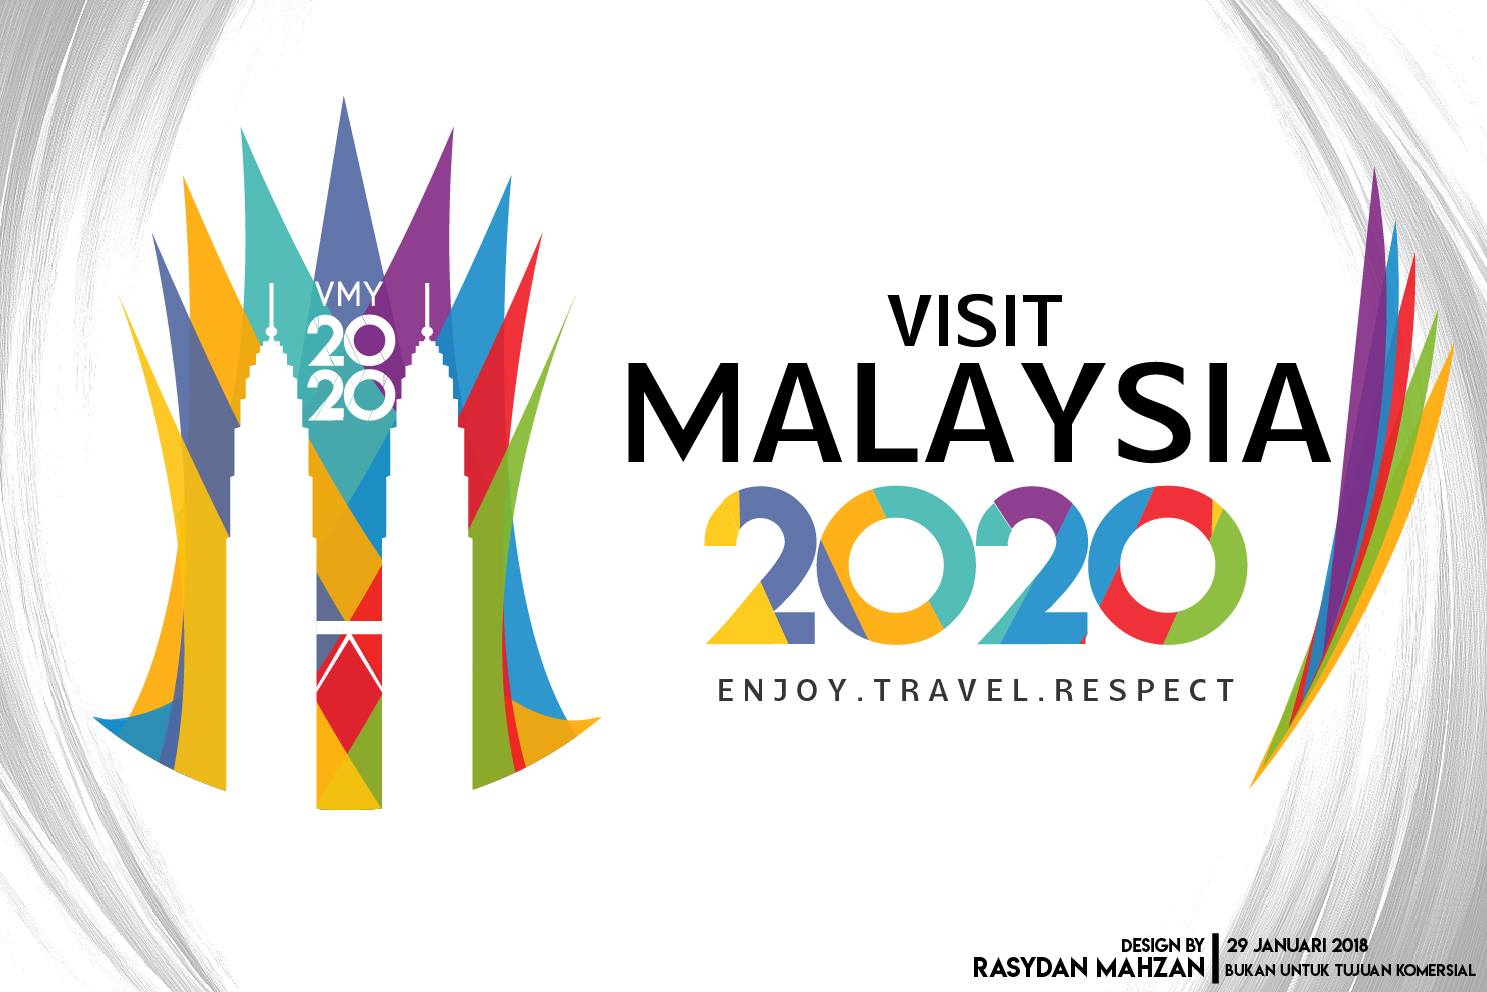 Tourism Malaysia Logo Png Tourism Company And Tourism Information Center